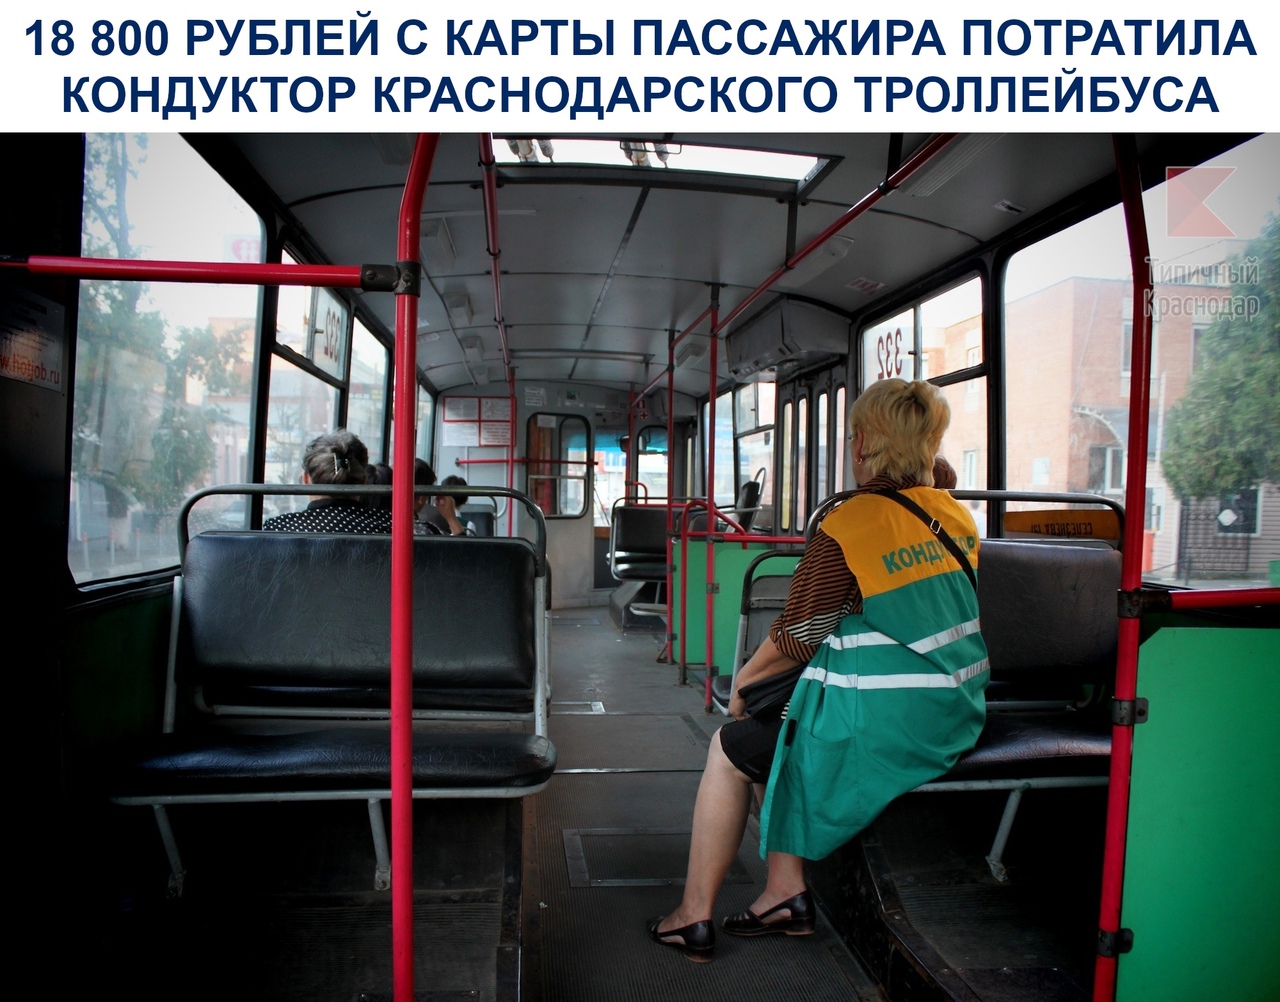 18 800 рублей с карты пассажира потратила кондуктор краснодарского троллейбуса